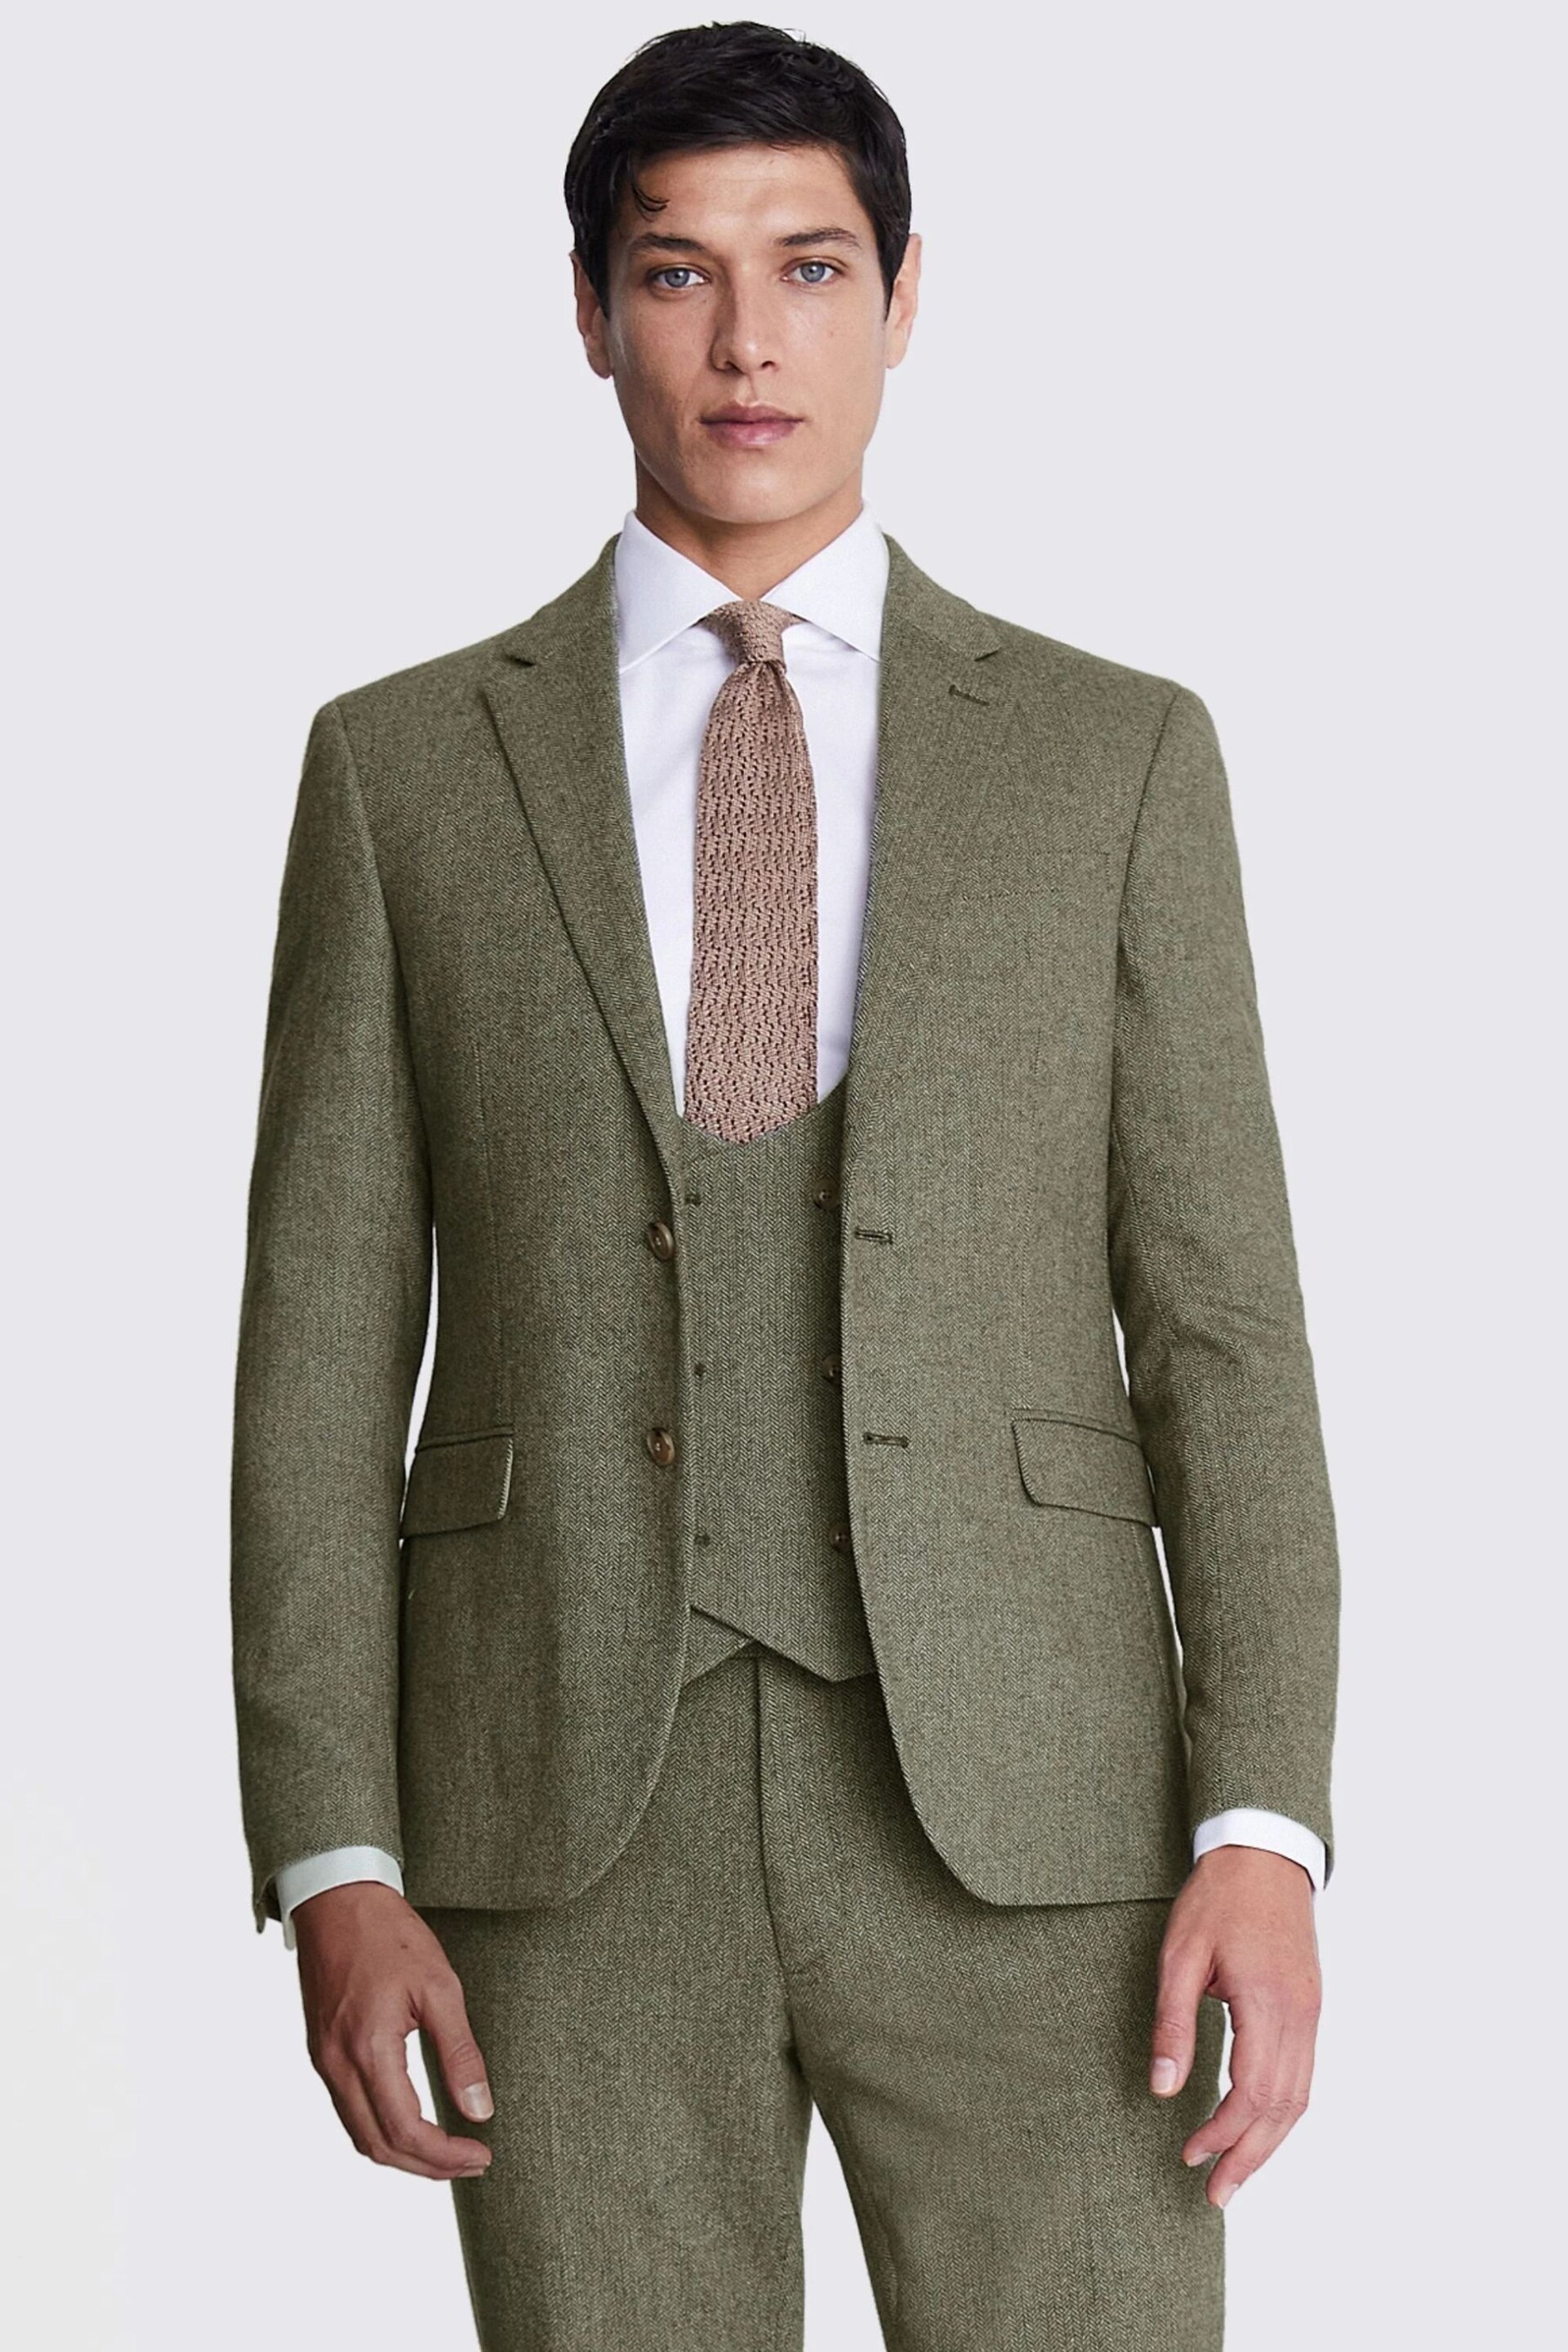 MOSS Sage Green Slim Fit Herringbone Tweed Jacket - Image 1 of 7